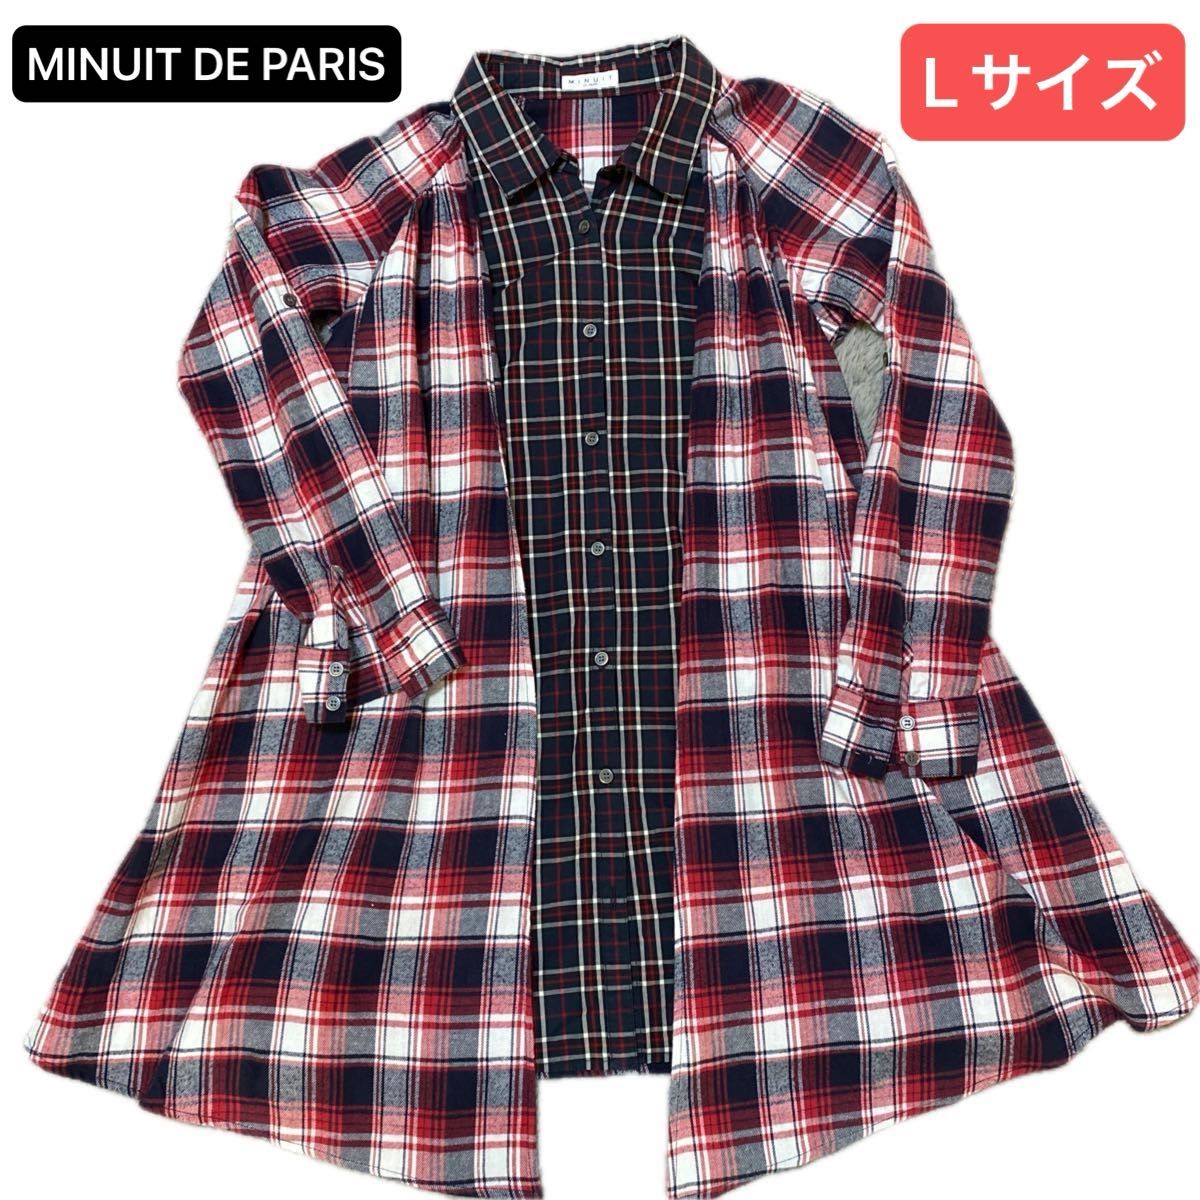 MINUIT DE PARIS レディース 重ね着タイプのチェックシャツ Lサイズ レイヤード